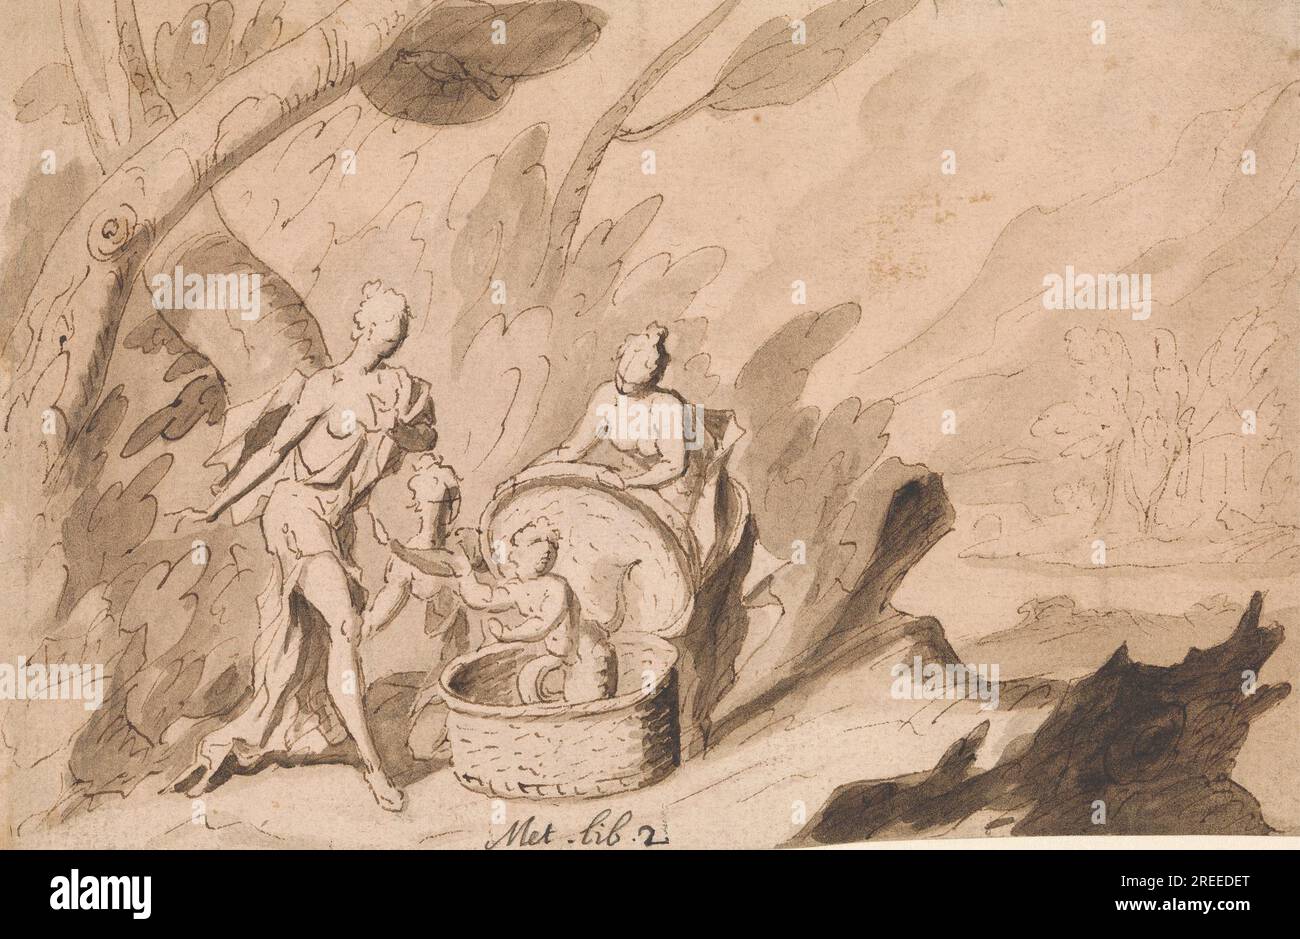 Le Figlie di Cecrops scoprono Ericthonius: Ovidio, Metamorfosi, Libro 2 1723 di Thomas Carwitham Foto Stock